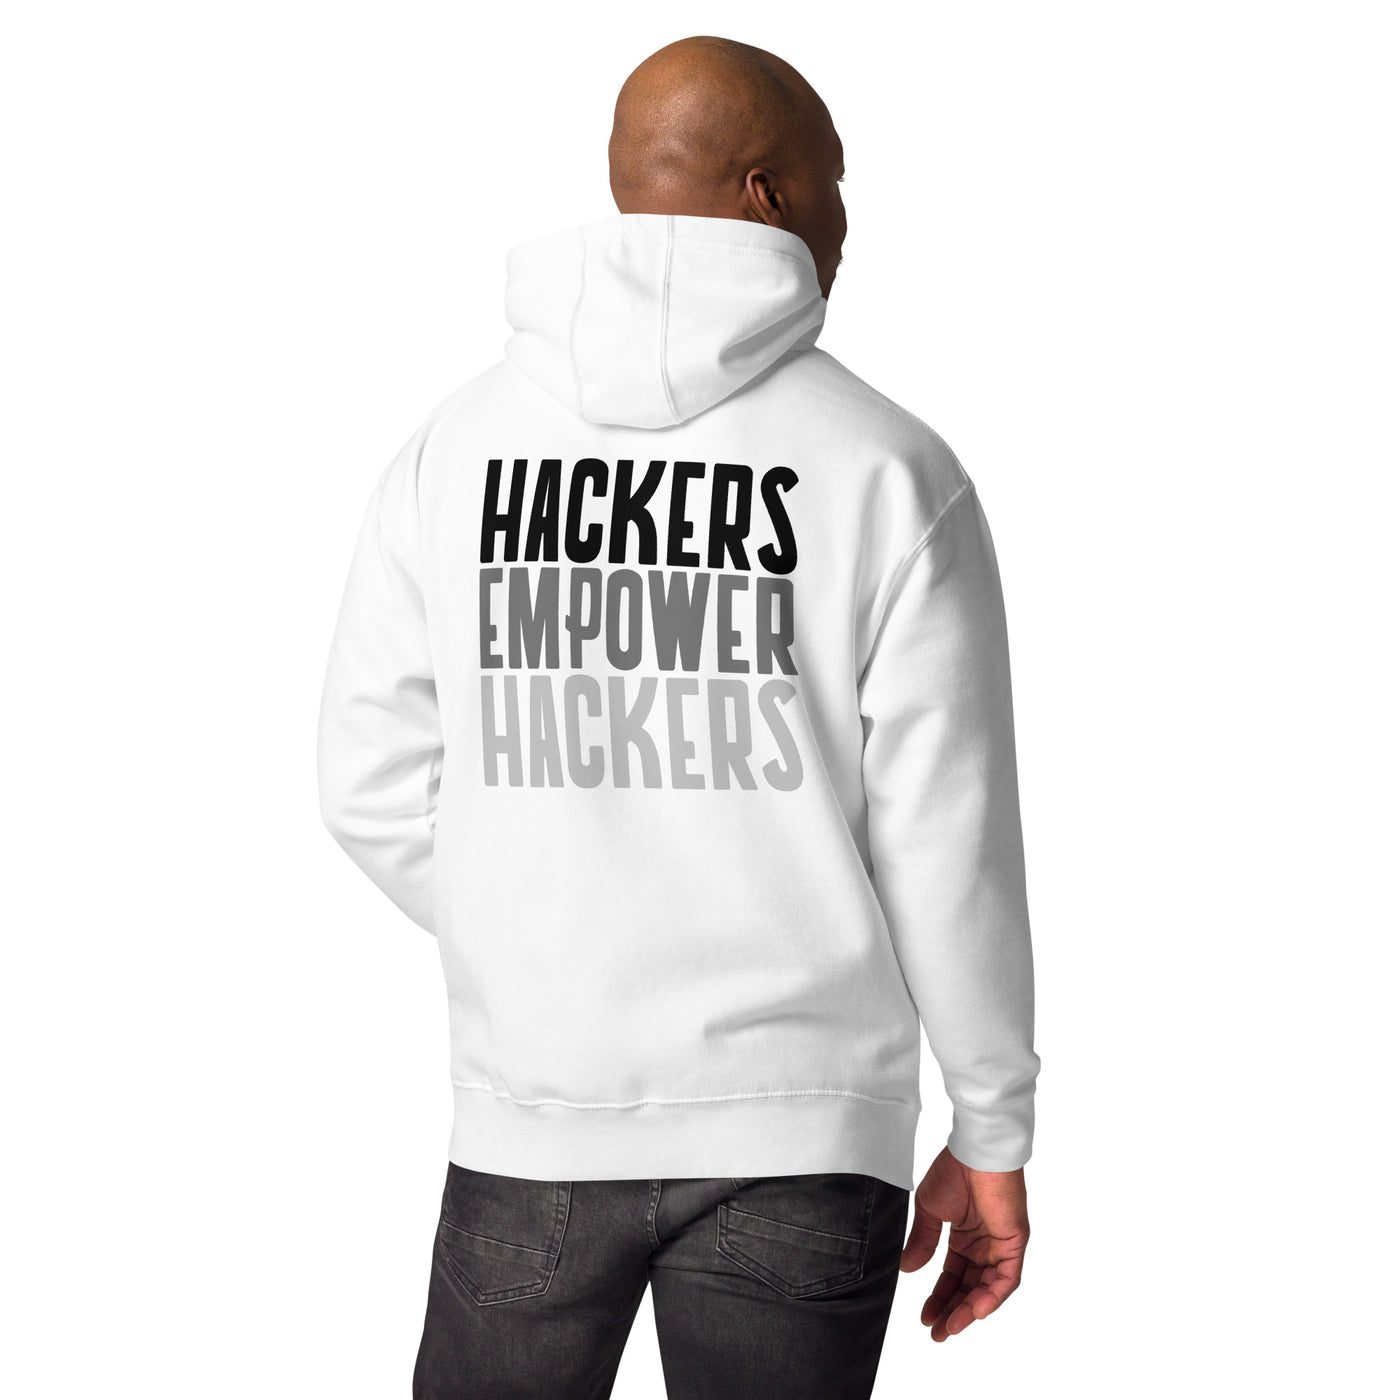 Hackers Empower Hackers - Unisex Hoodie ( Back Print )